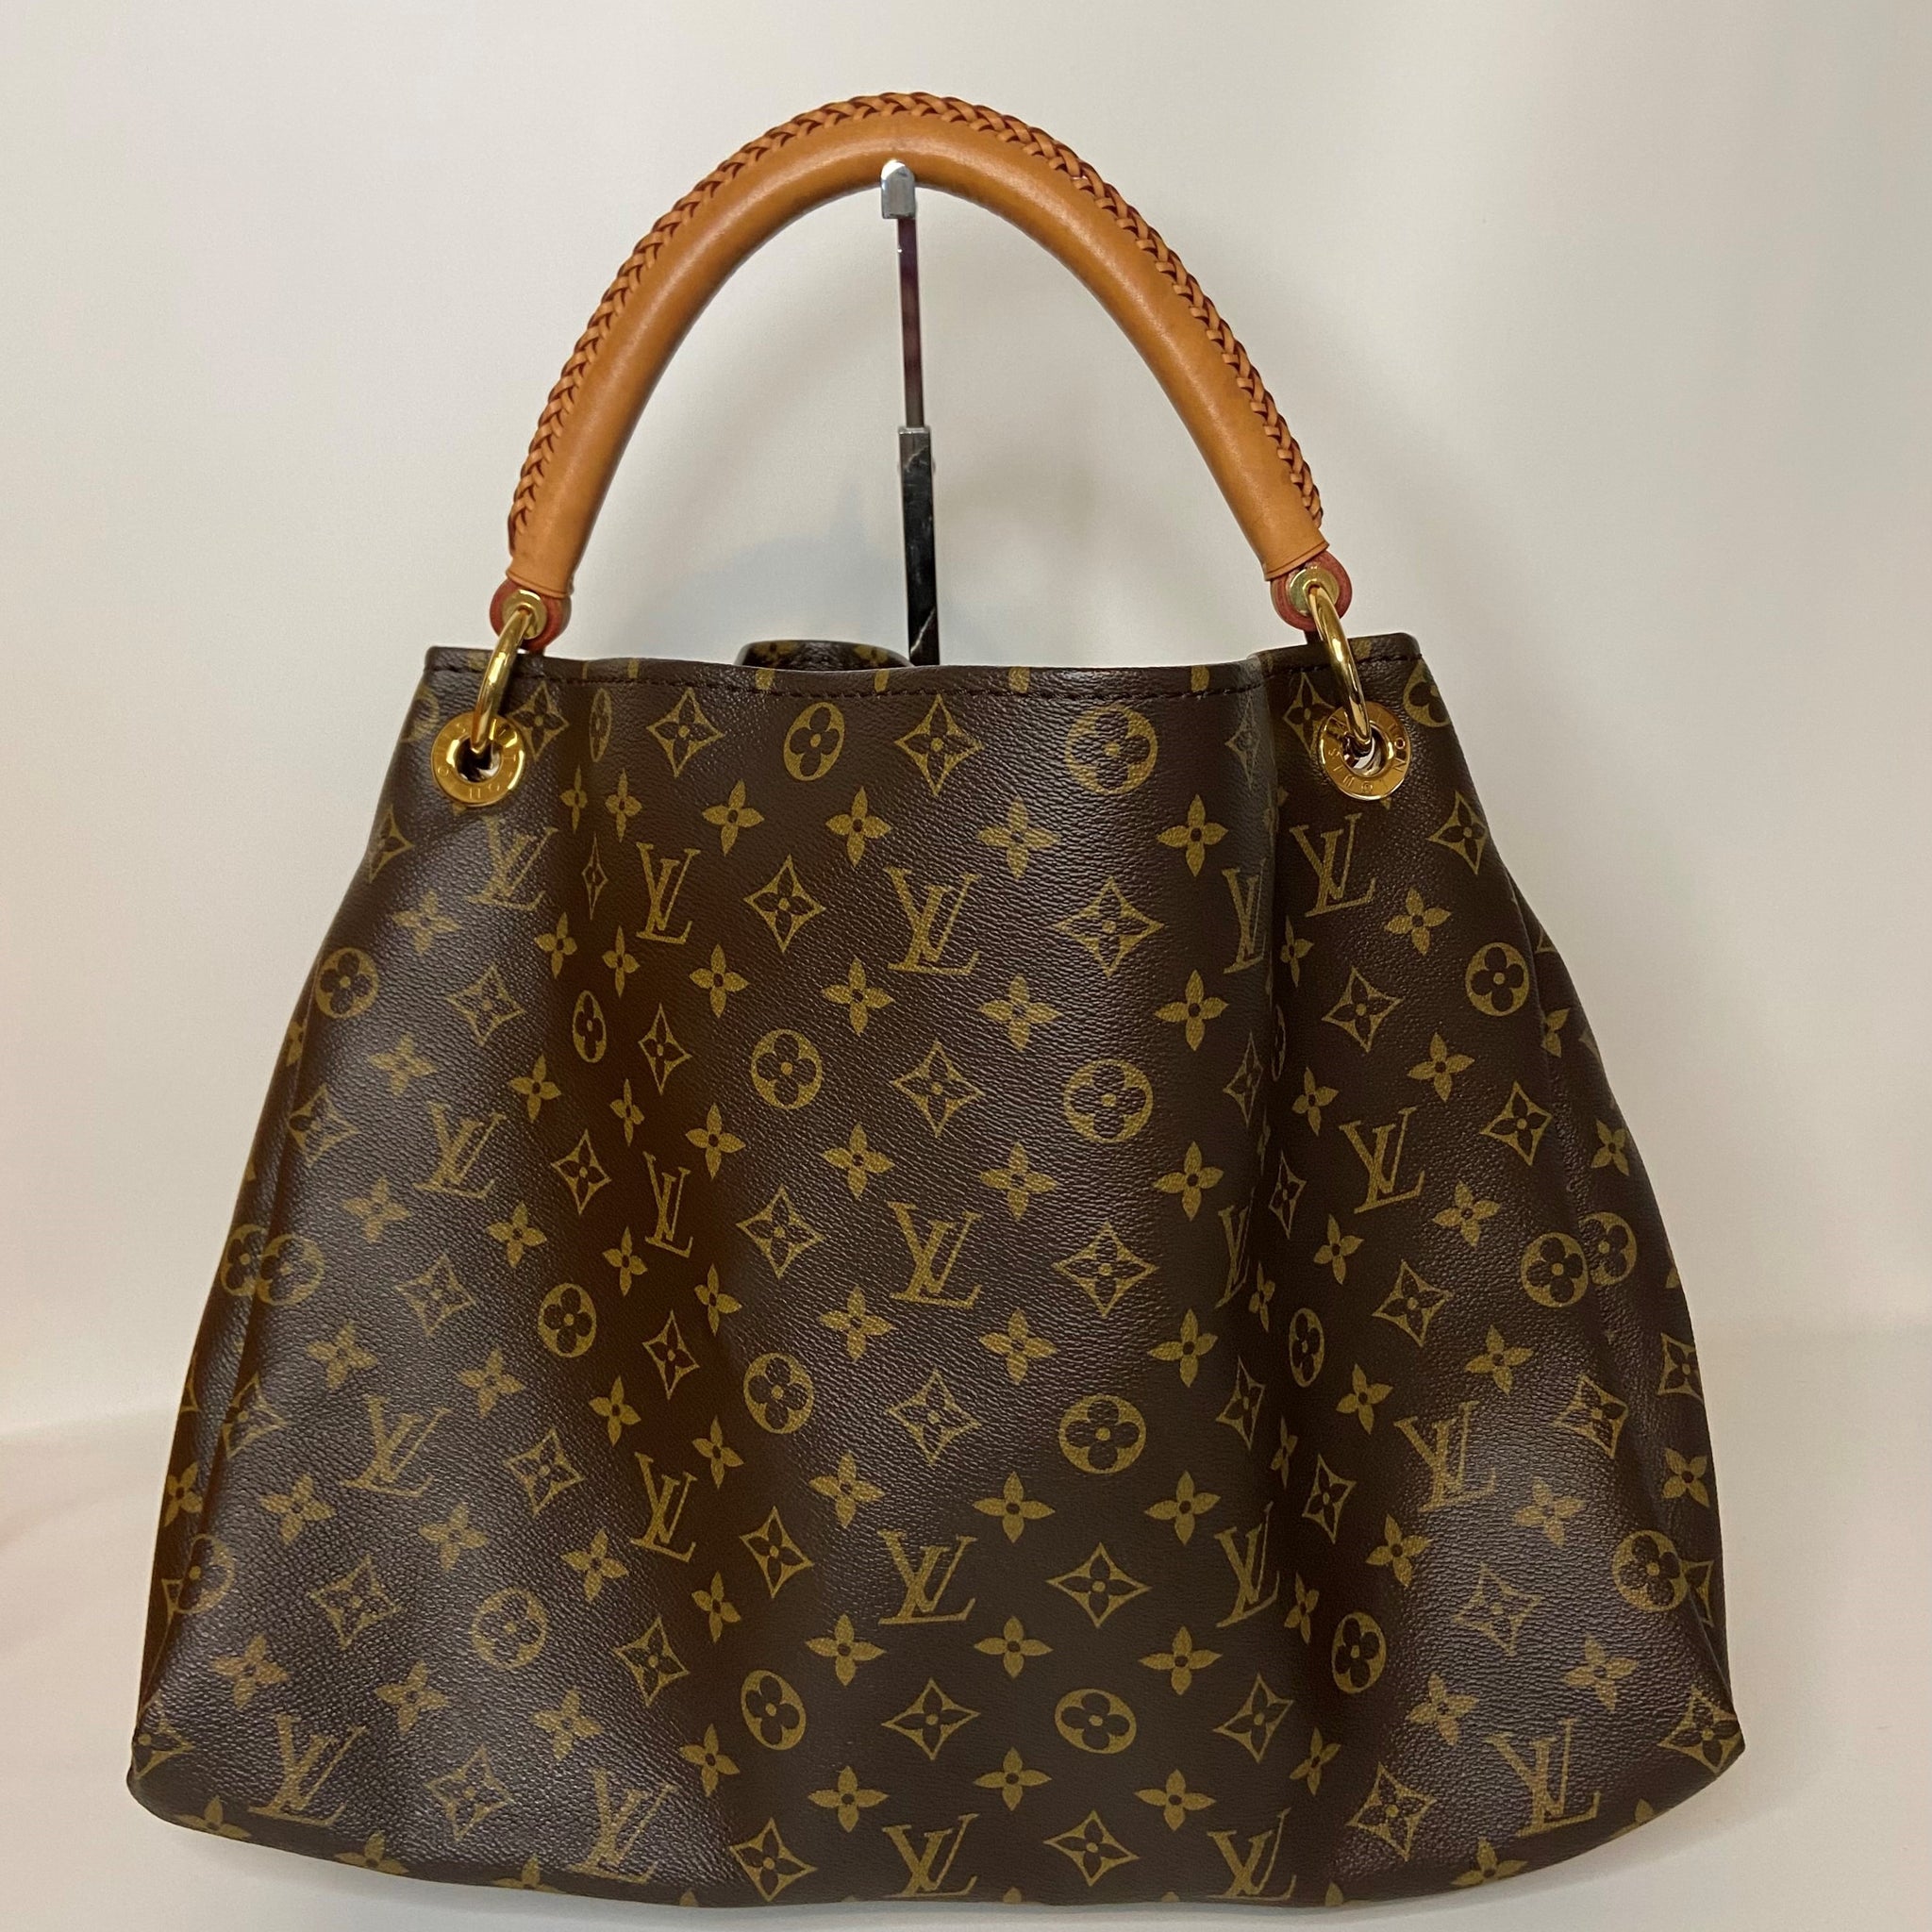 Louis Vuitton Artsy MM Bag Review 